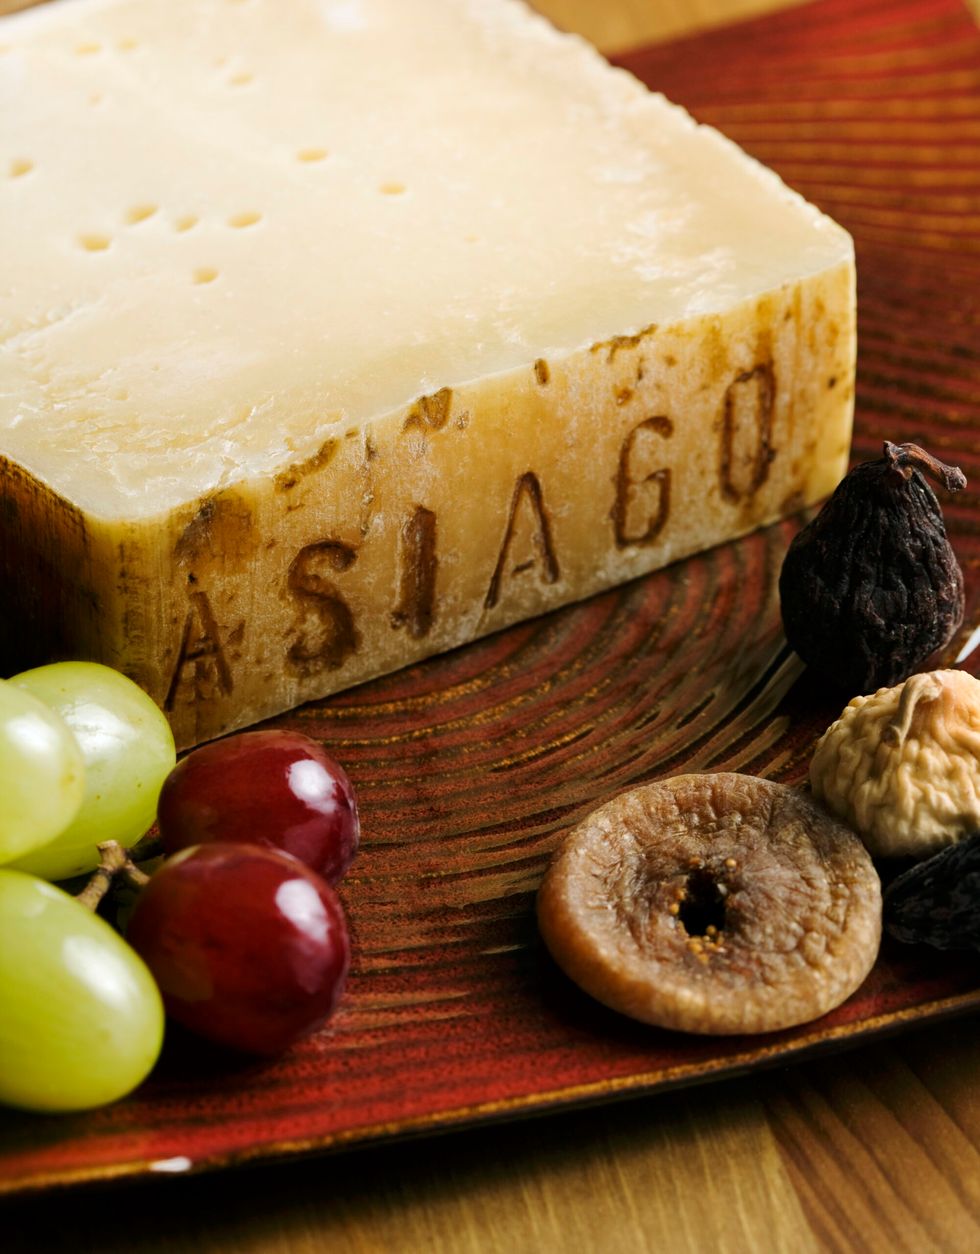 Asiago cheese